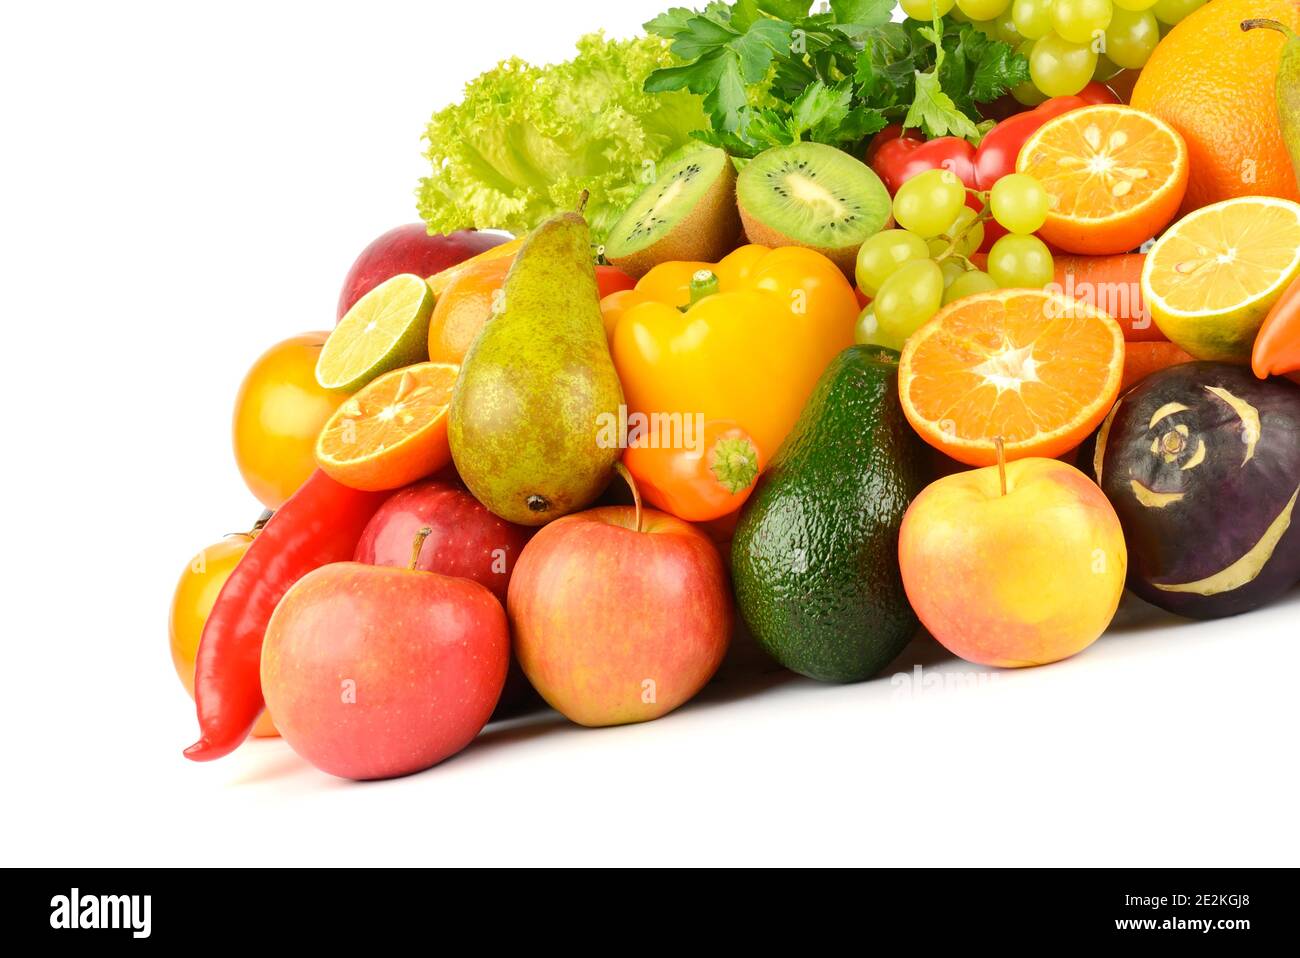 Composizione con frutta e verdura sane isolate su sfondo bianco Foto Stock